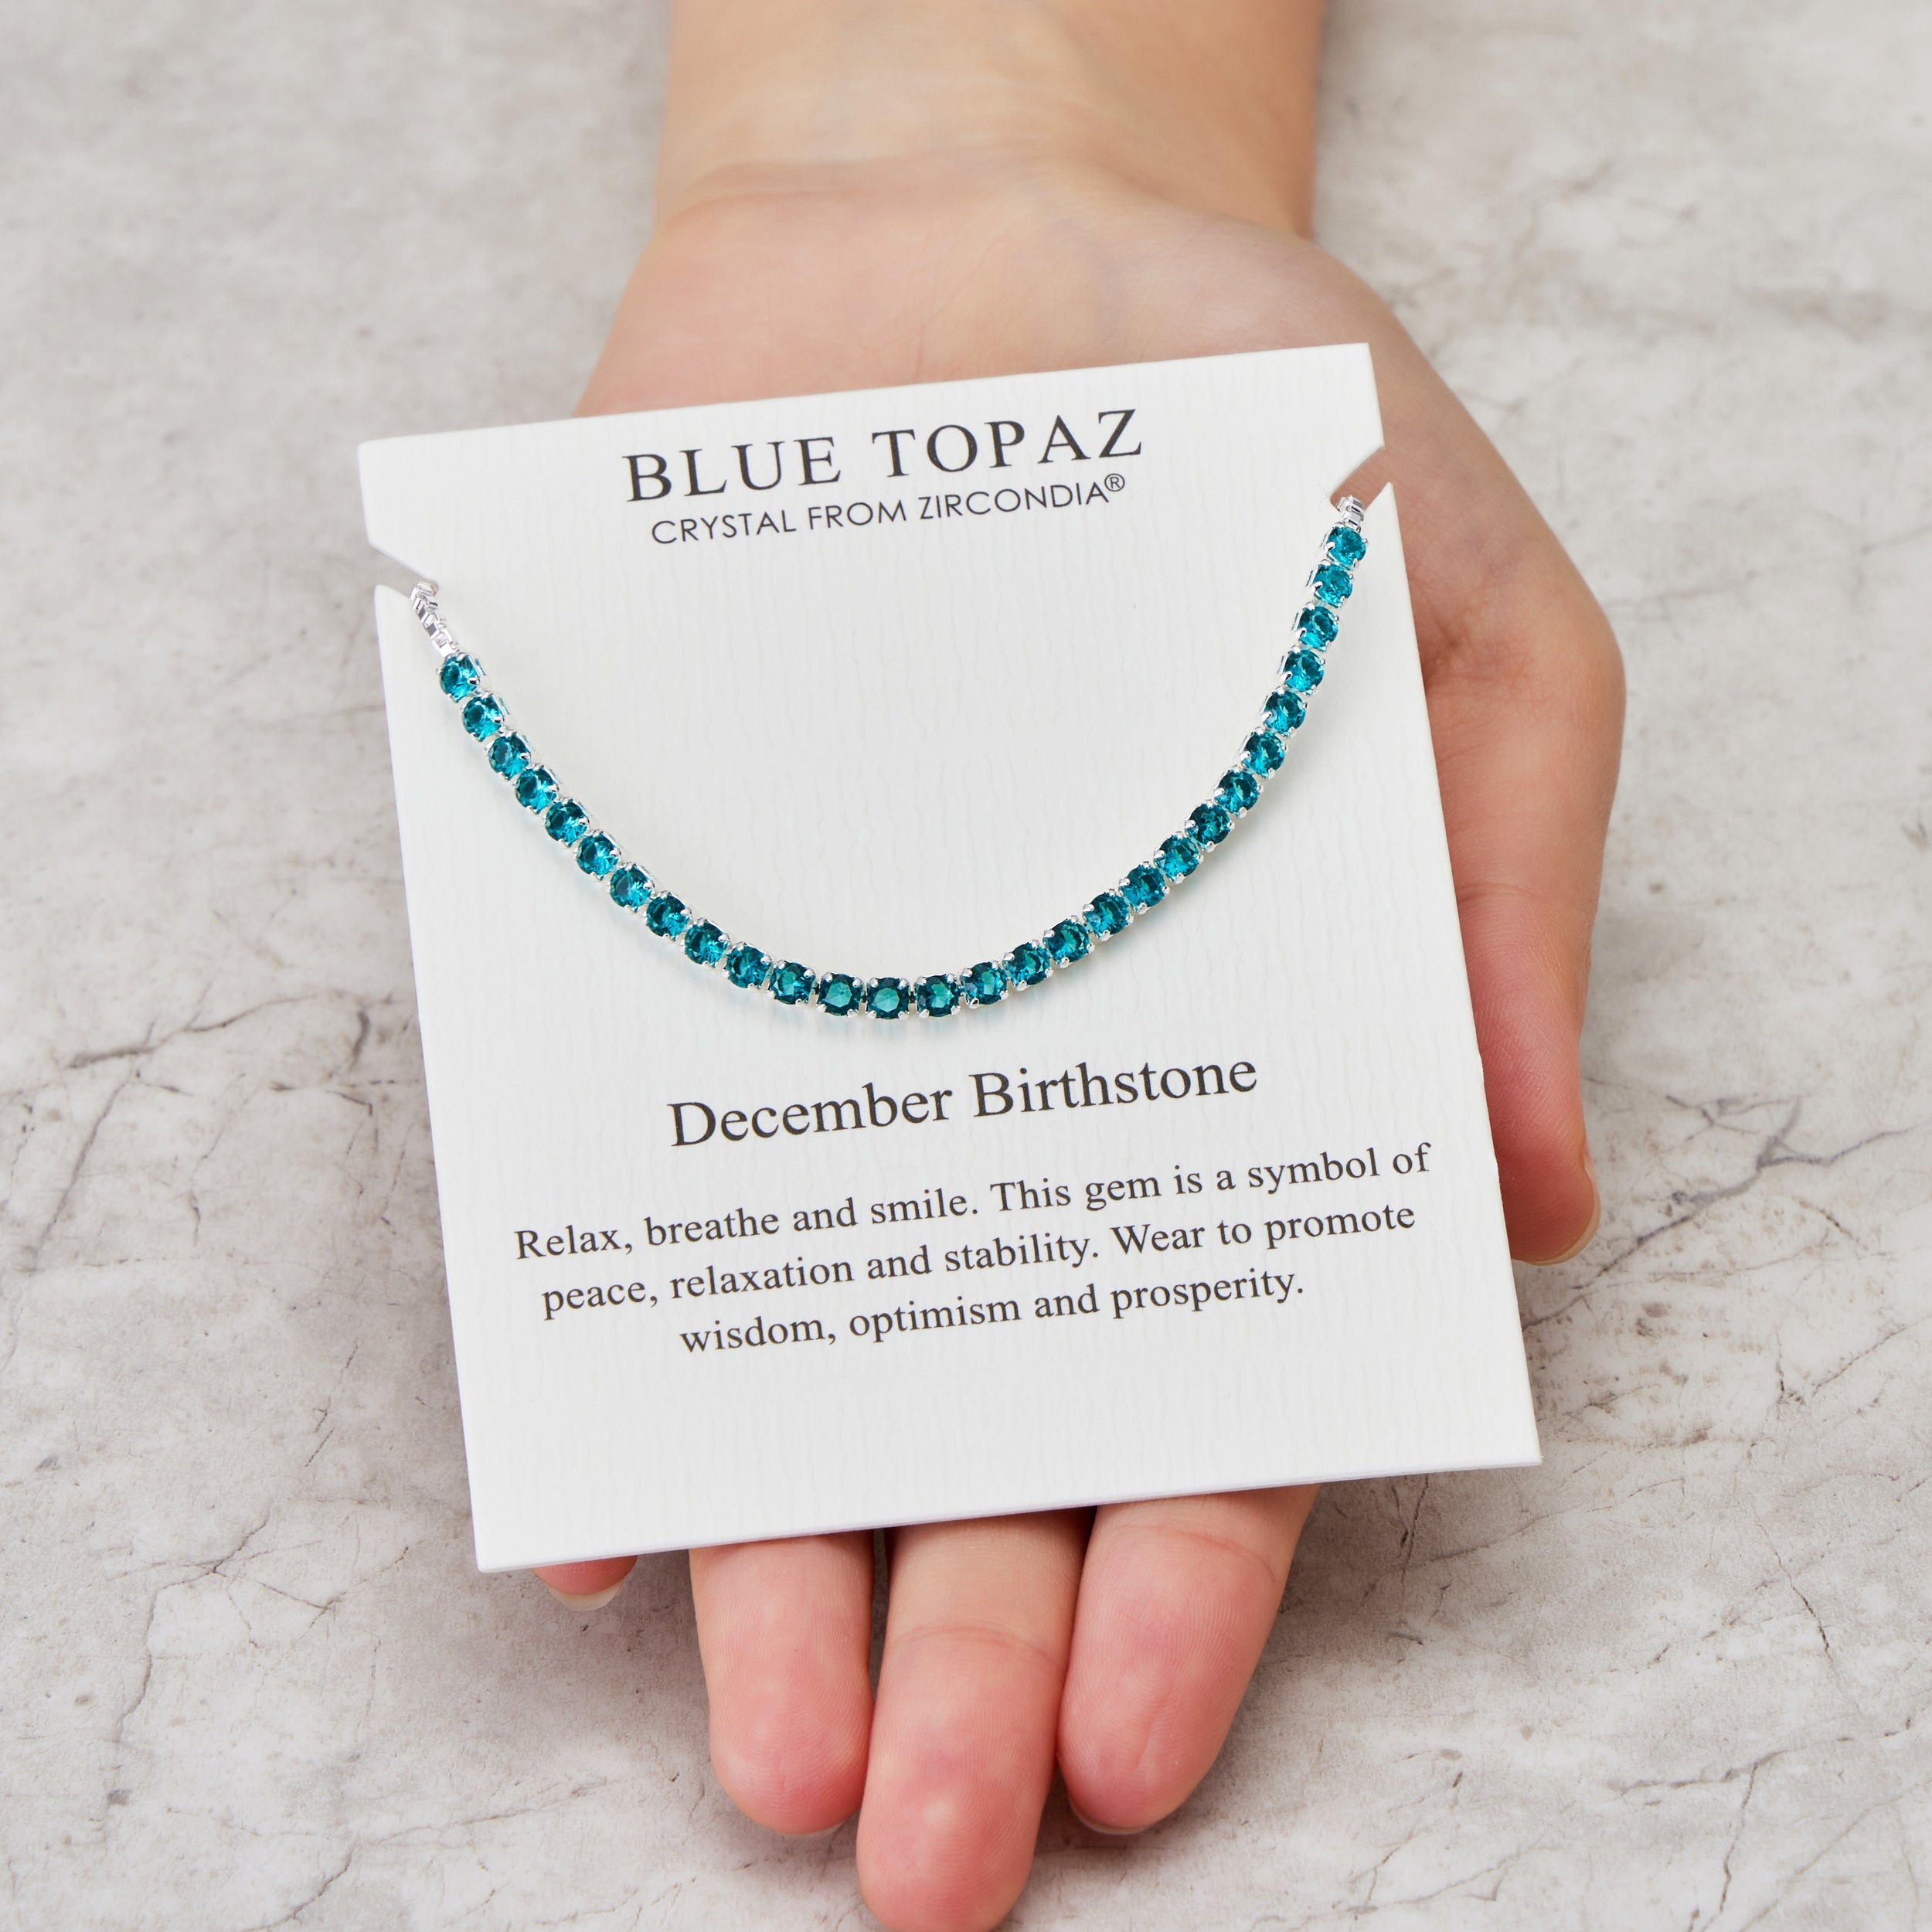 December Birthstone Friendship Bracelet with Blue Topaz Zircondia® Crystals